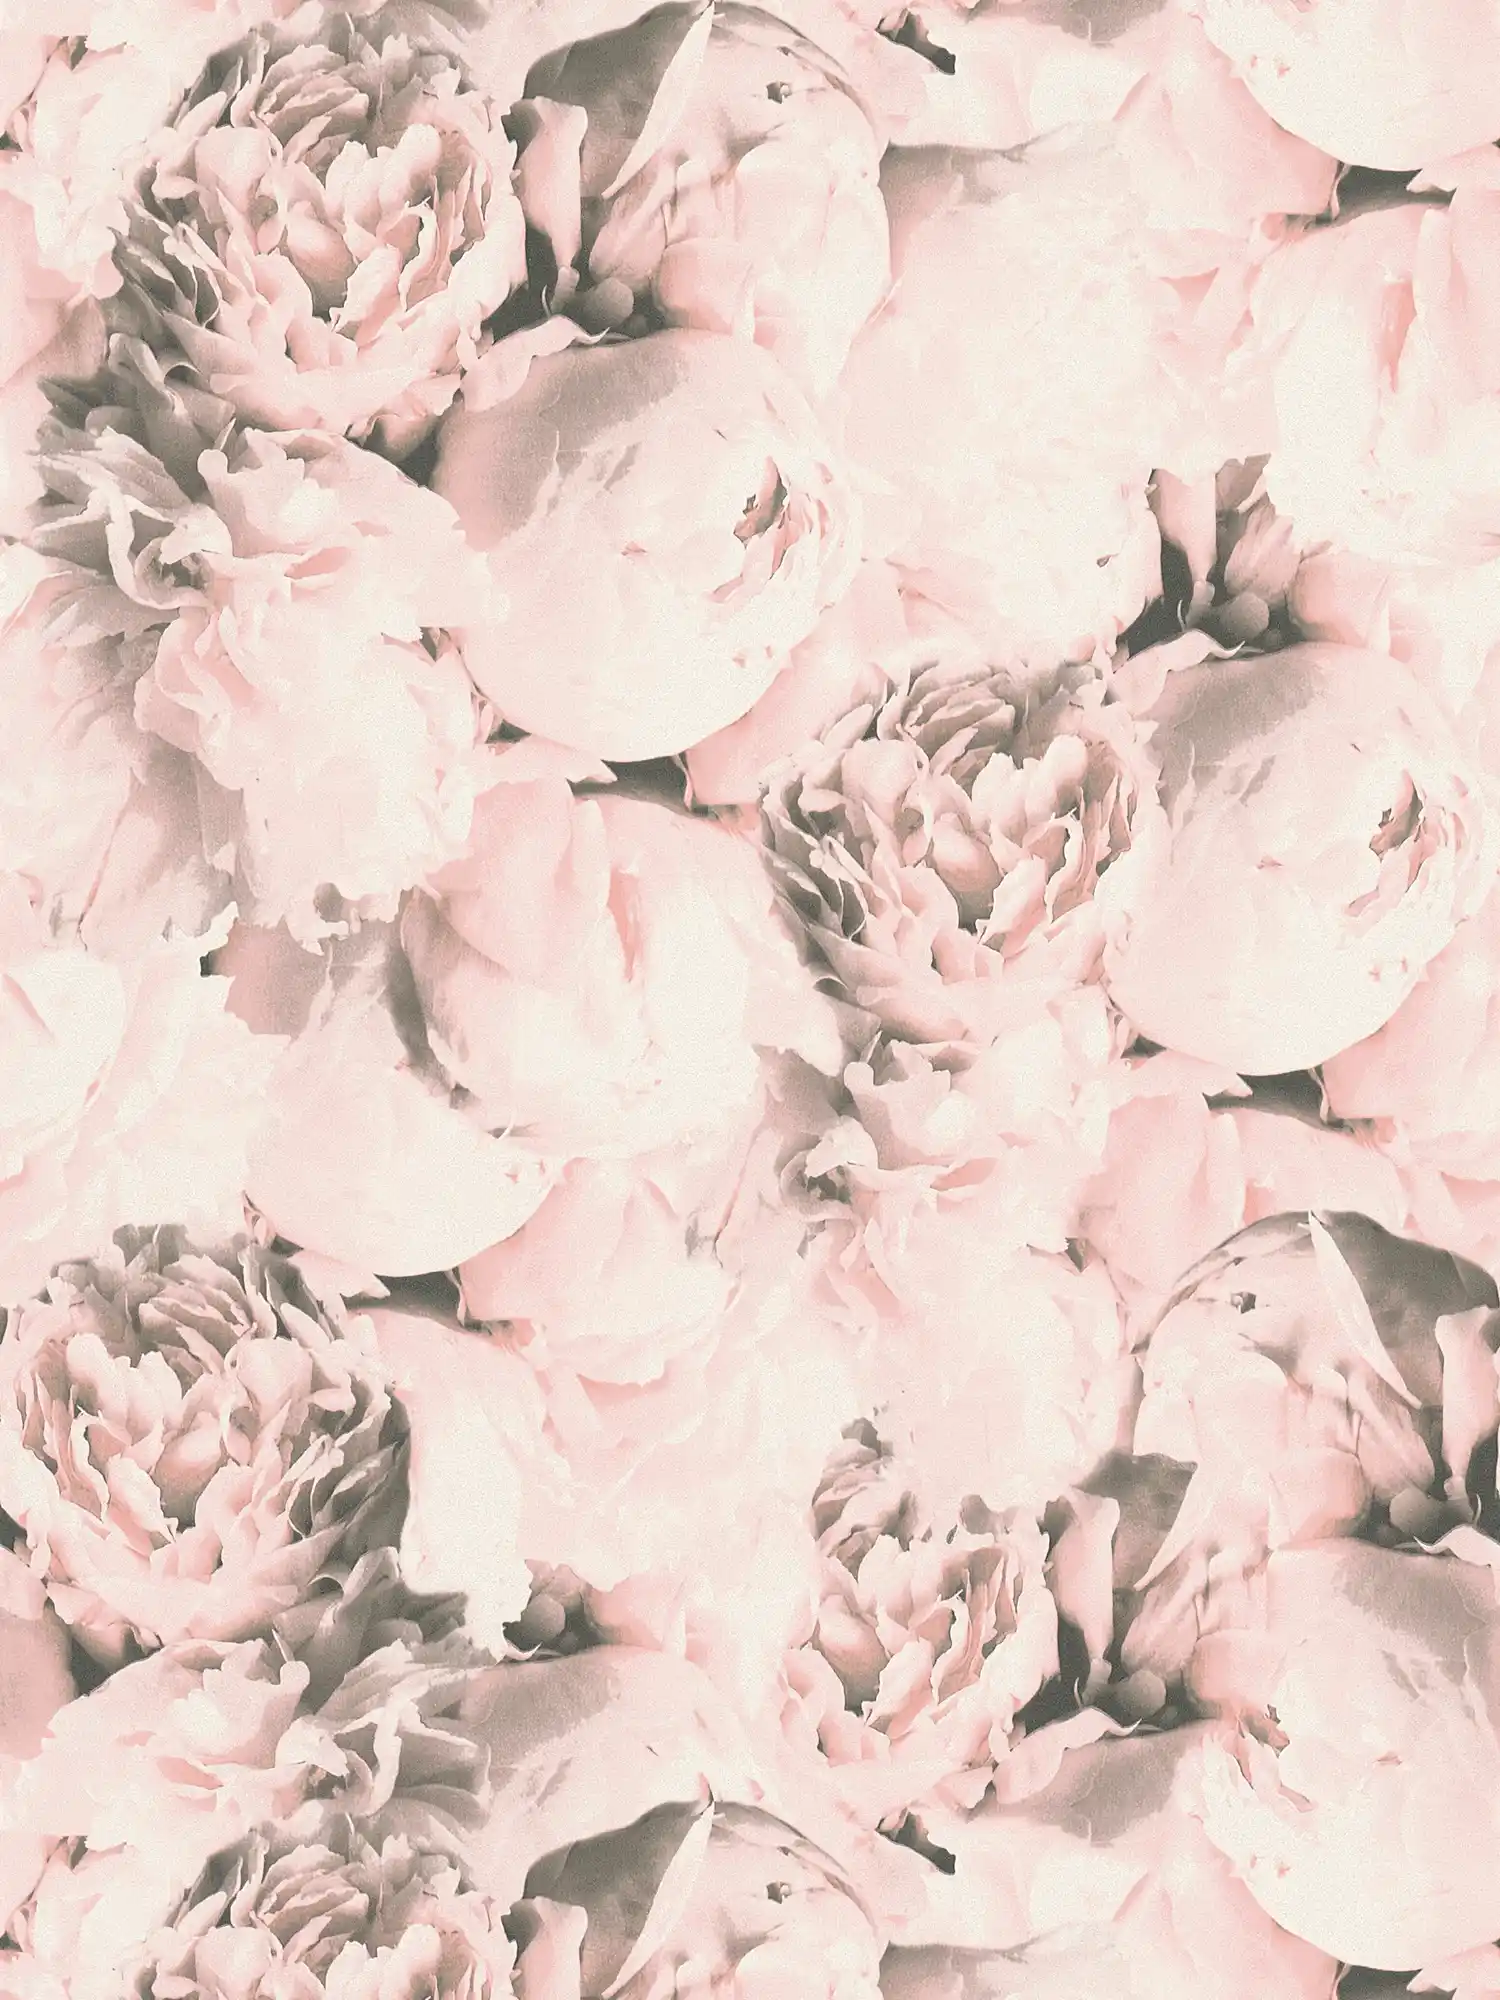         Blumentapete Rosen mit Schimmer Effekt – Rosa, Creme
    